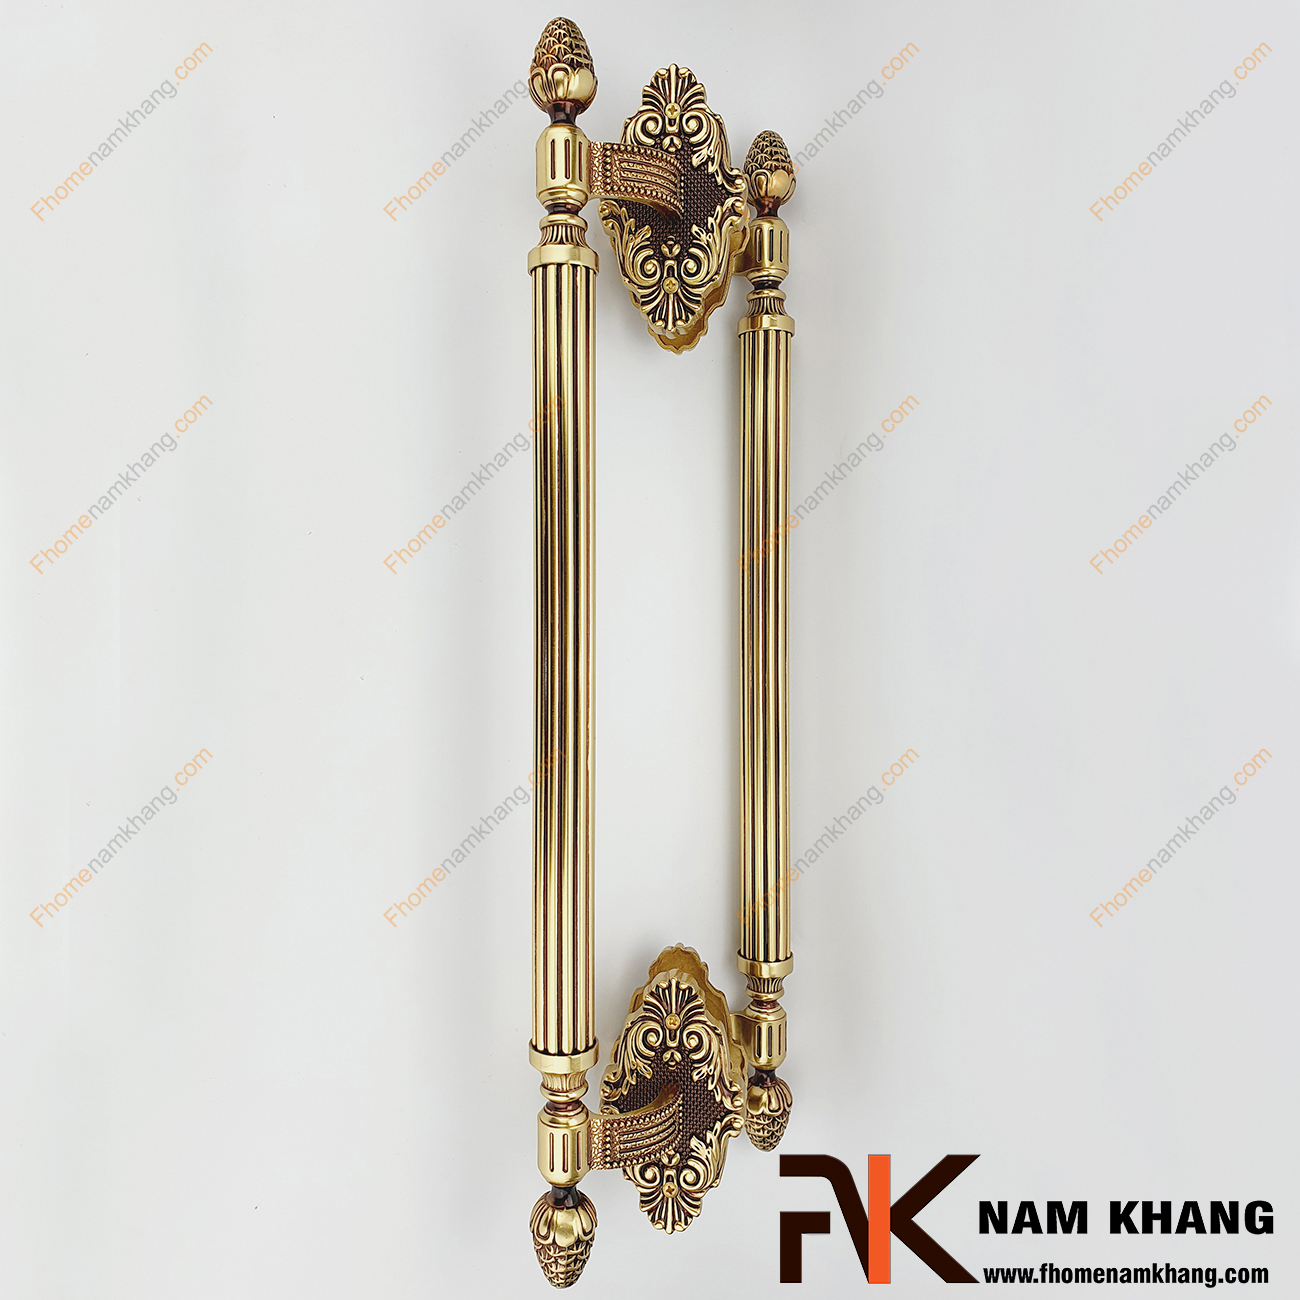 Khóa cửa sảnh phối hợp màu đồng vàng viền đỏ NK362K-RG là dạng khóa chuyên dùng cho cửa sảnh, cửa chính lớn, cửa 2 hoặc 4 cánh,...